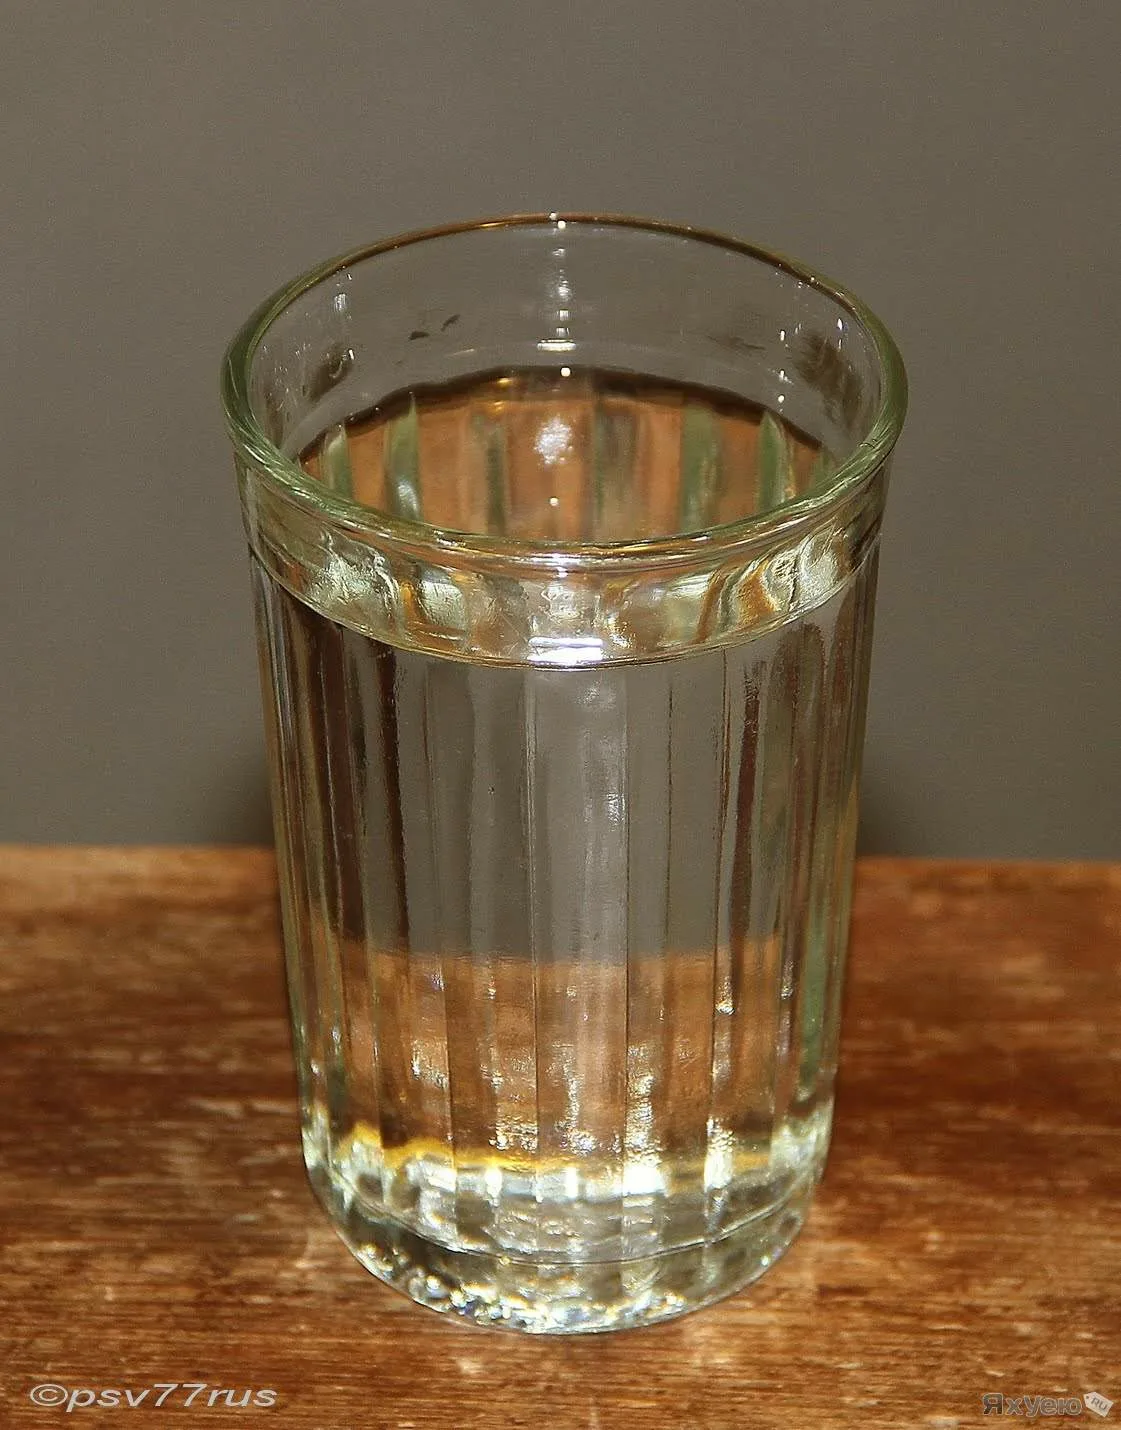 Добавить стопку. Граненый стакан 100 грамм. Граненый стакан с водой. Полный стакан.